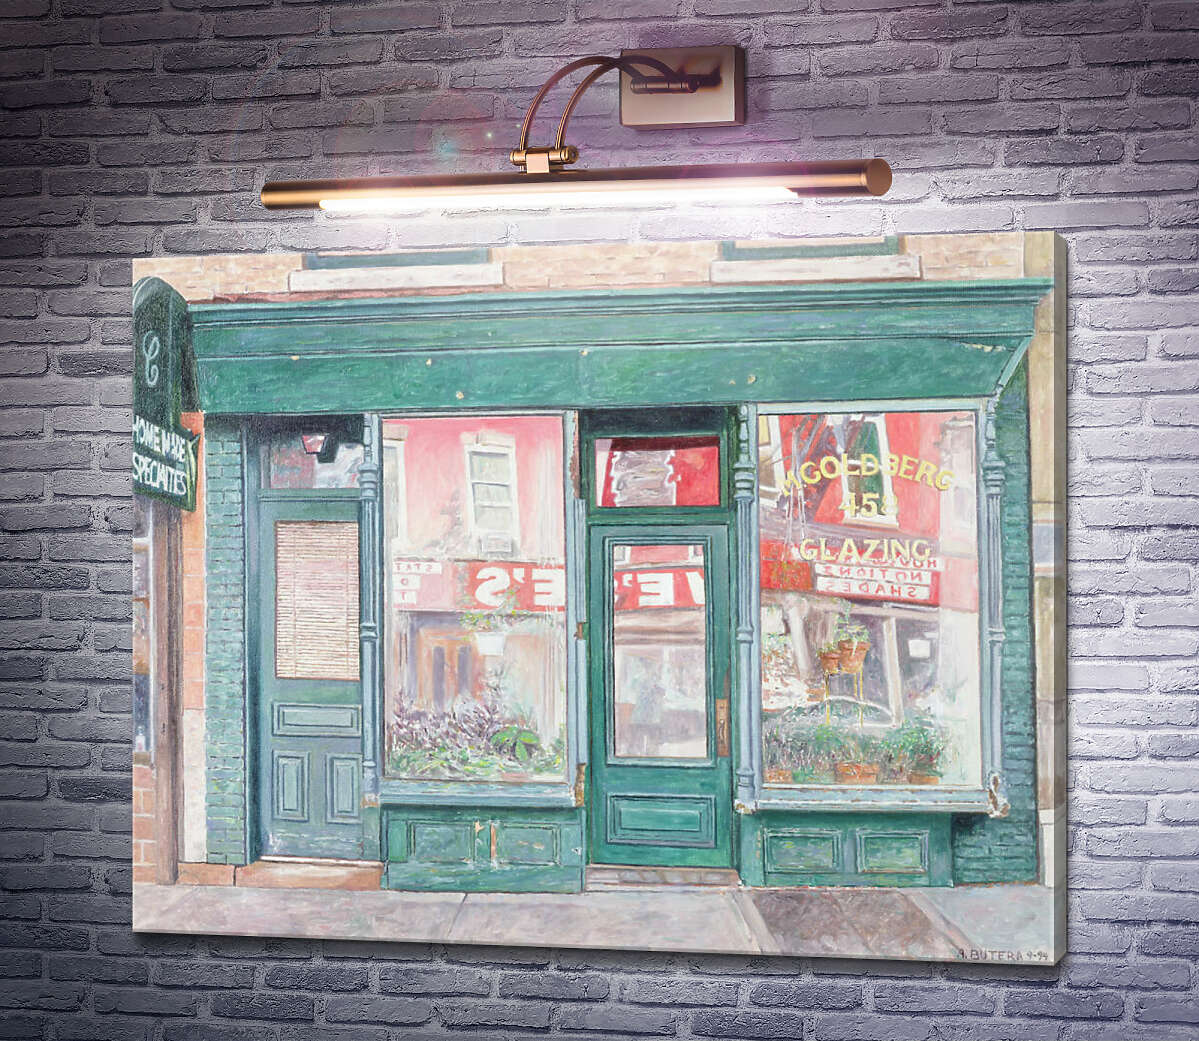 Картина Скляний двір М.Голдберга, Сент-Бруклін, Нью-Йорк Ентоні Бутера